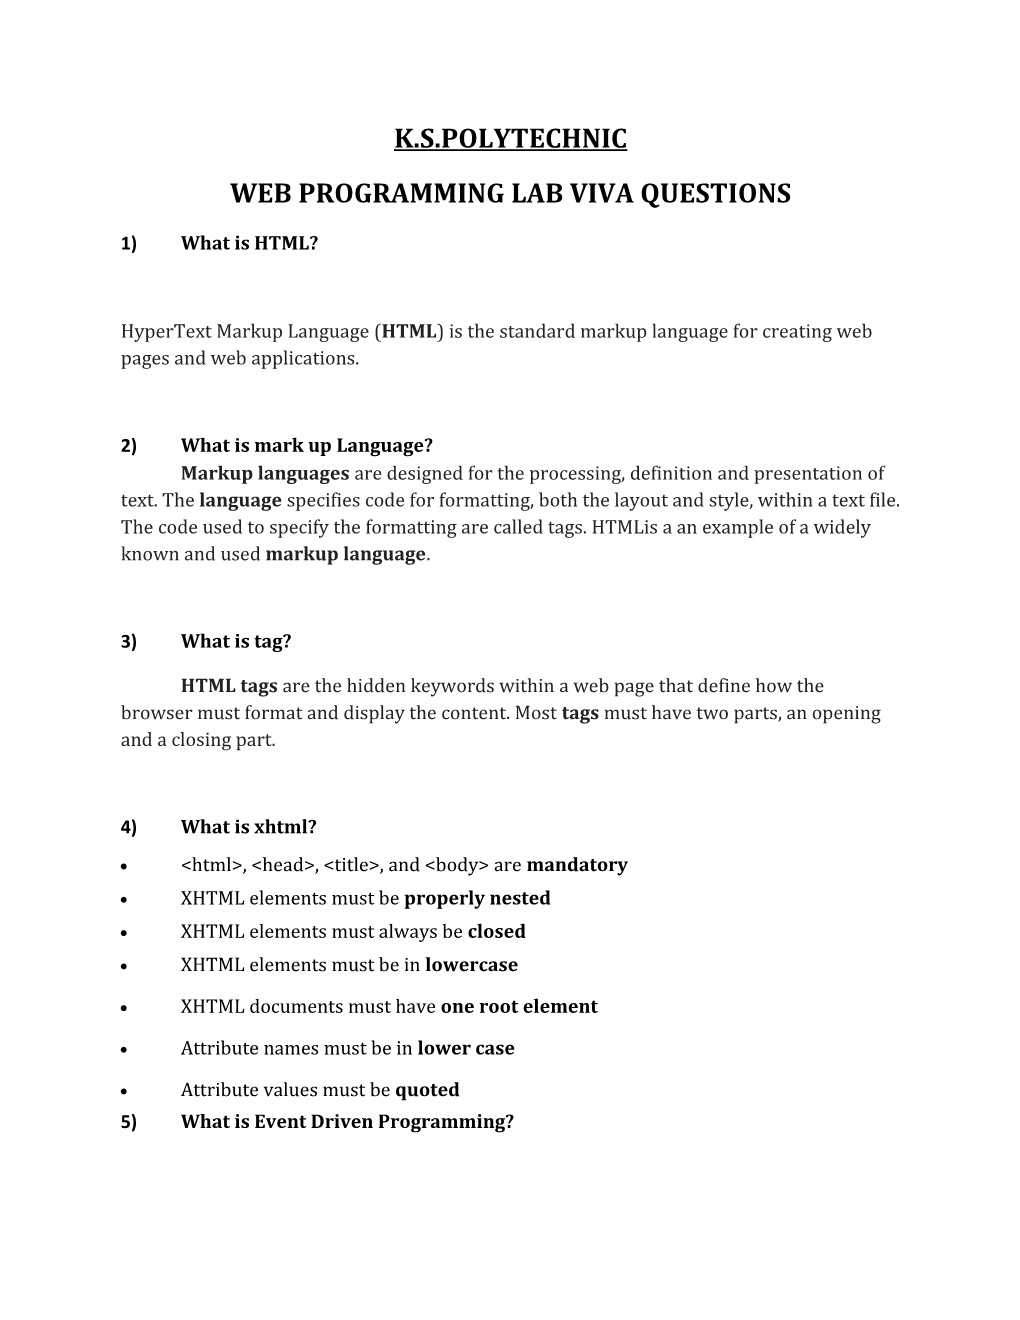 Web Programming Lab Viva Questions